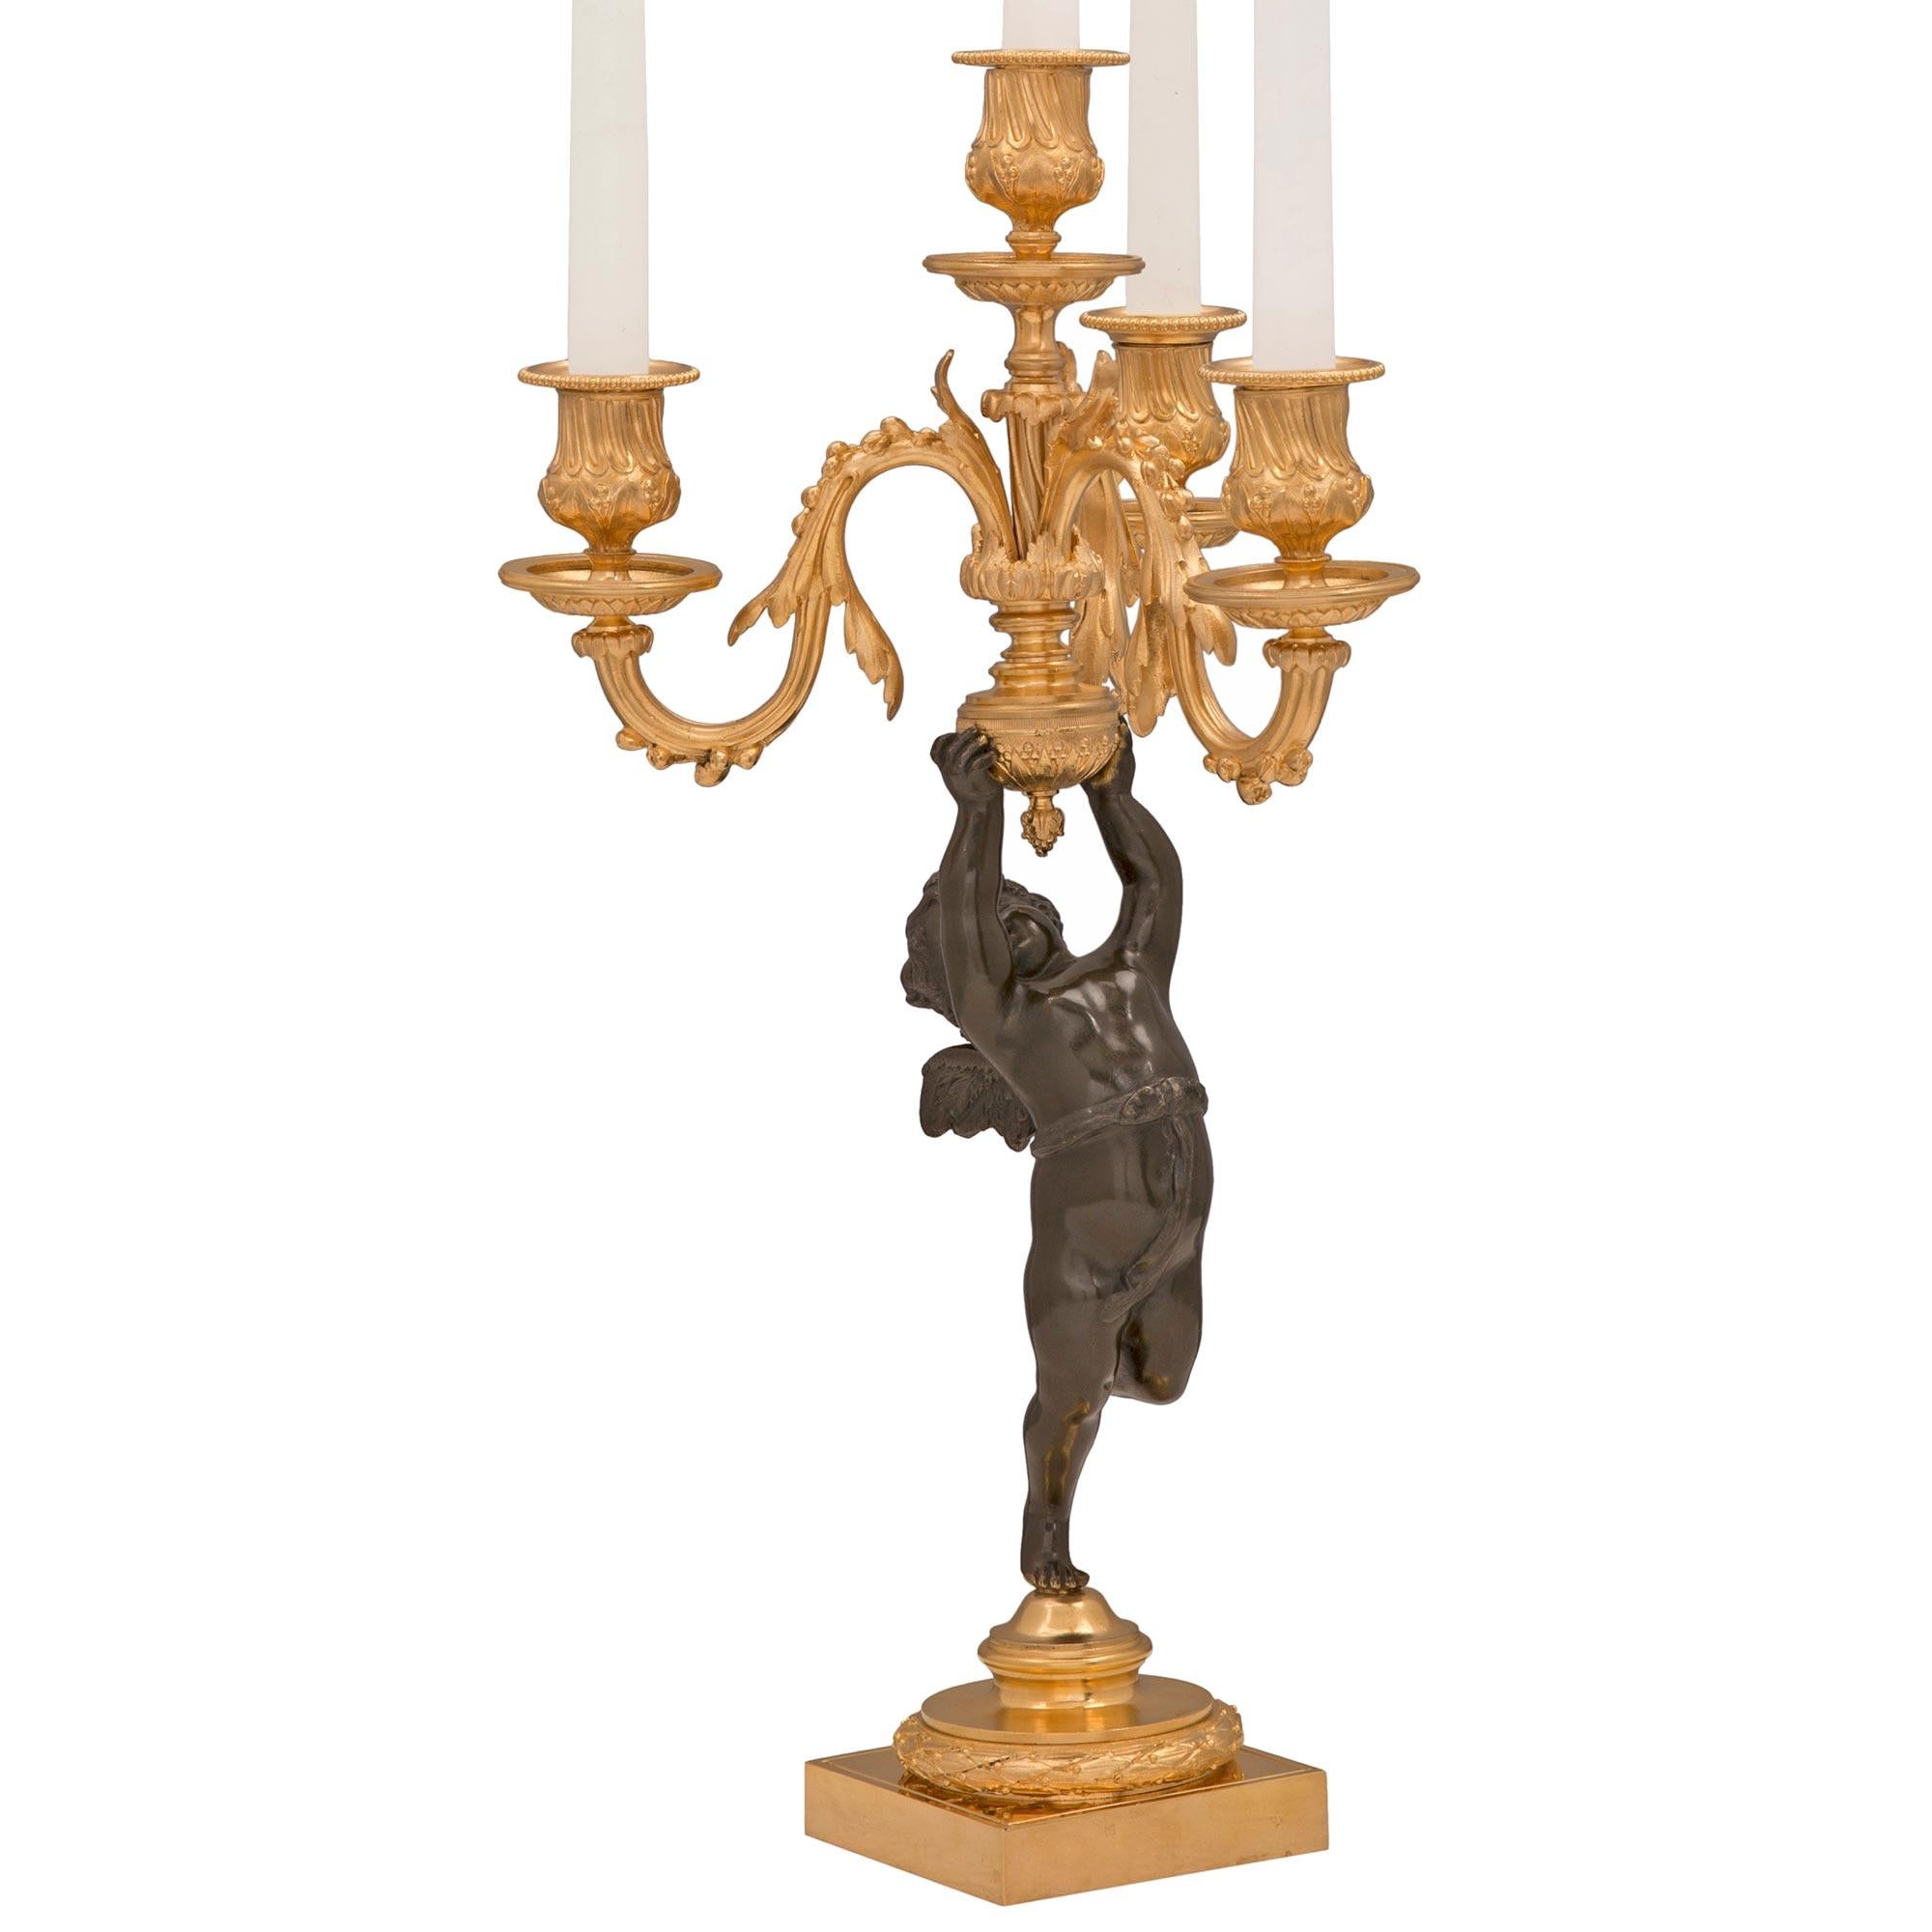 Charmante paire de candélabres français du XIXe siècle, de style Louis XVI, en bronze patiné et bronze doré. Chaque candélabre à quatre bras est surélevé par une base carrée en bronze doré avec une fine enveloppe de laurier et un support tacheté où